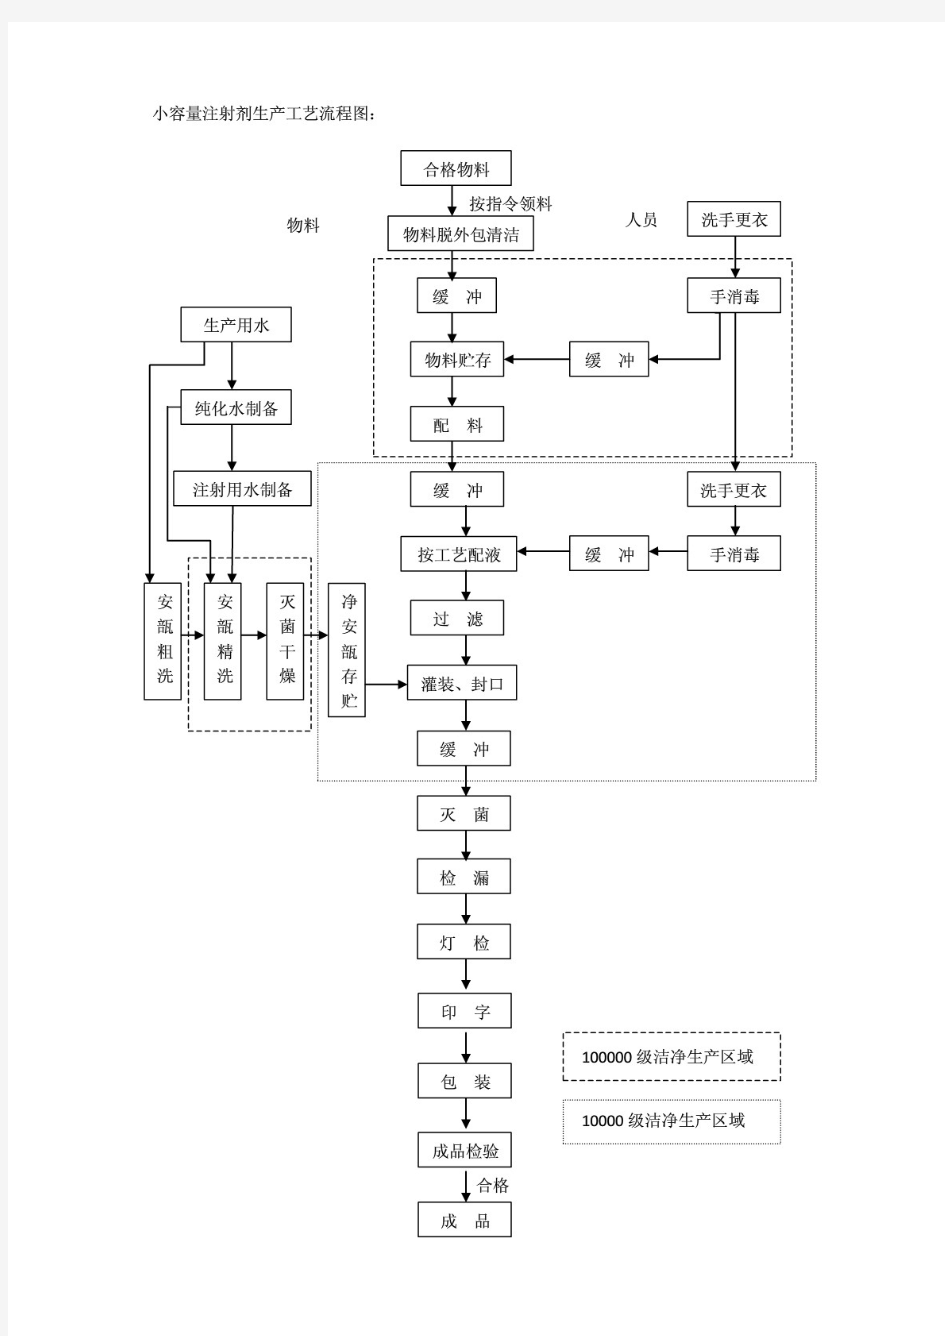 小容量注射剂生产工艺流程图及流程说明 PDF